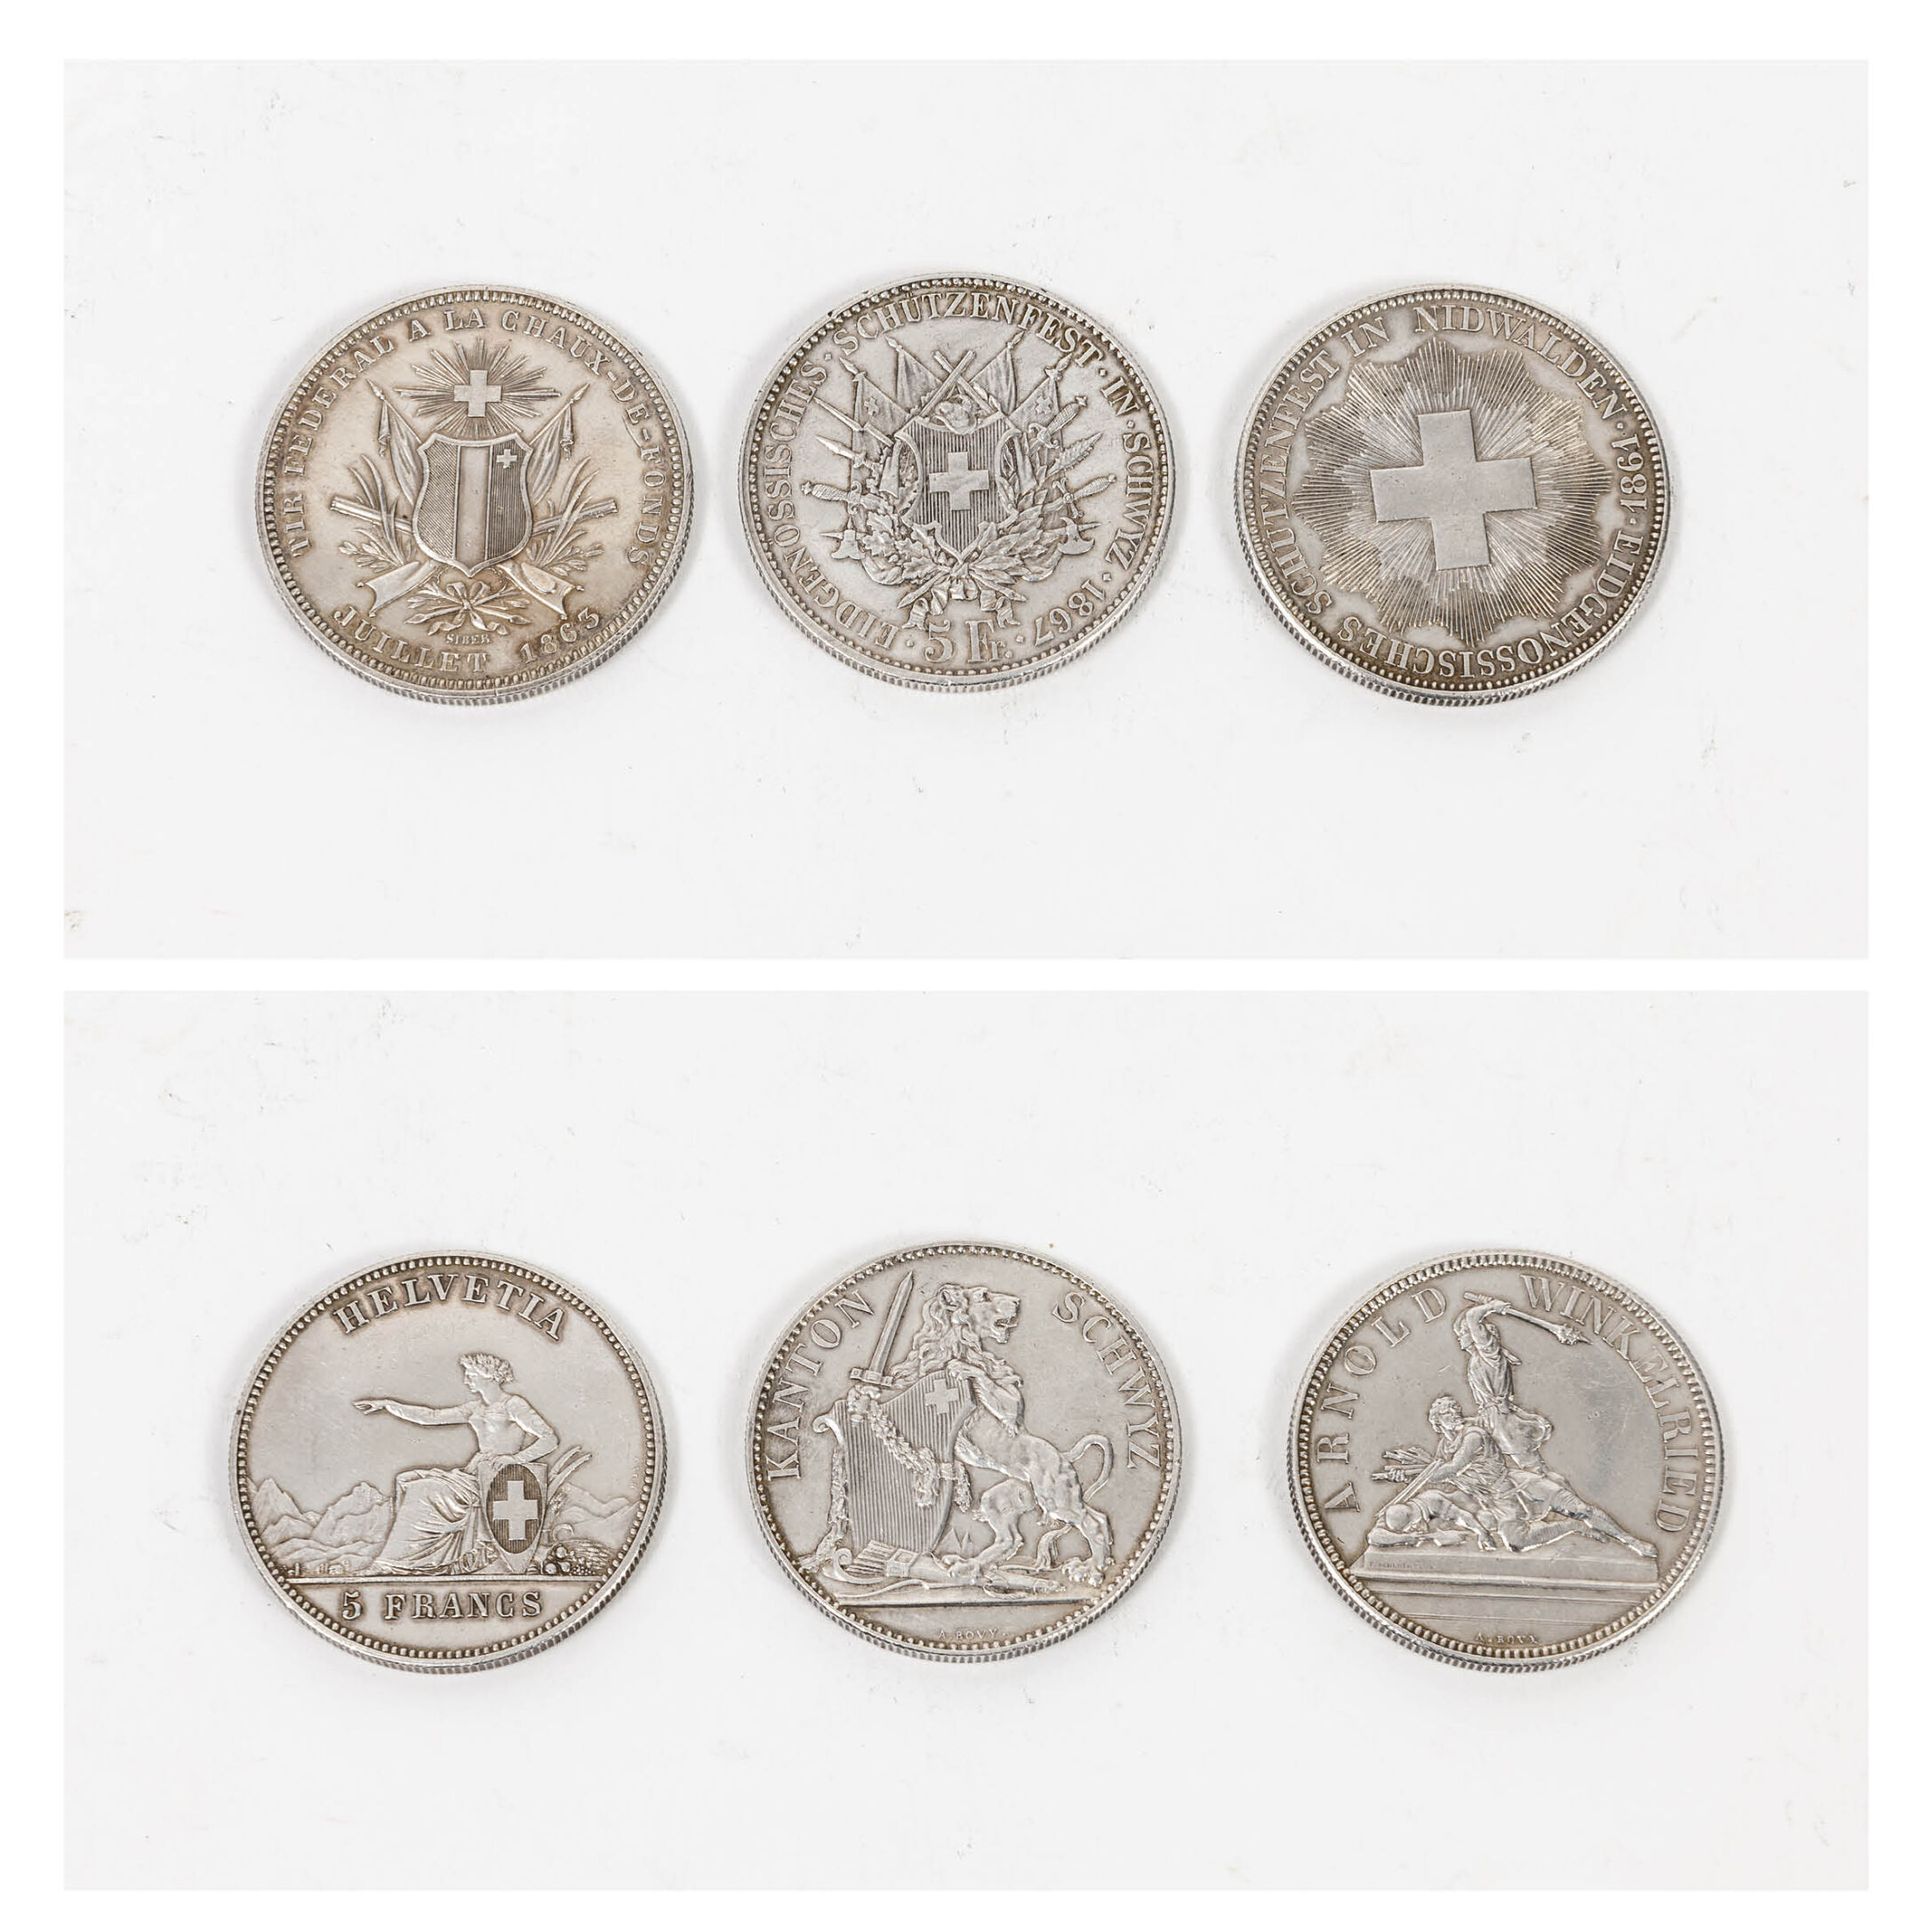 SUISSE 5 francos Circulación: 3 ejemplares

Nidwalden 1861. - La Chaux de Fonds &hellip;